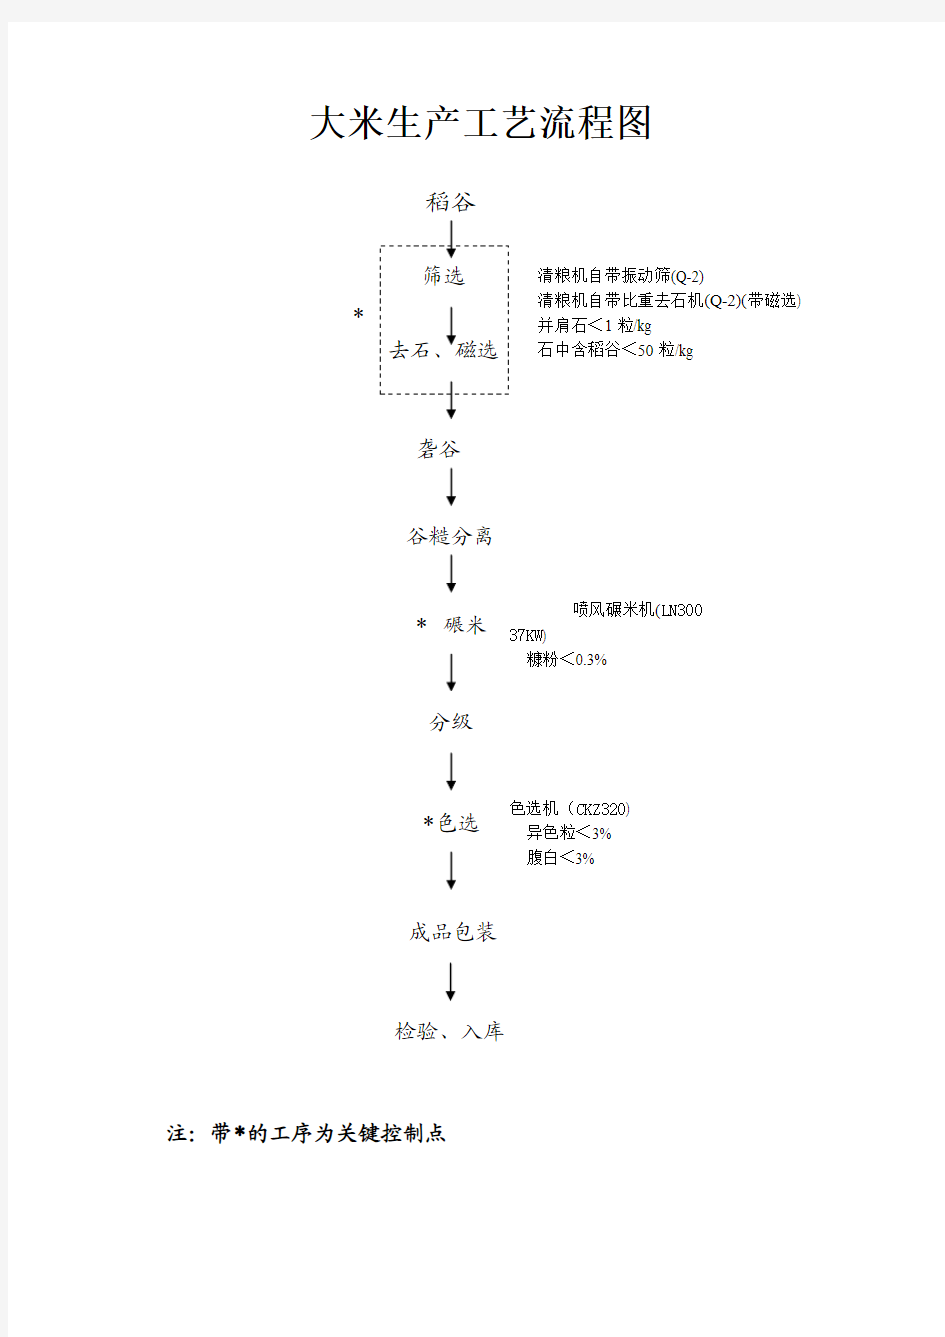 05大米生产工艺流程图(1)